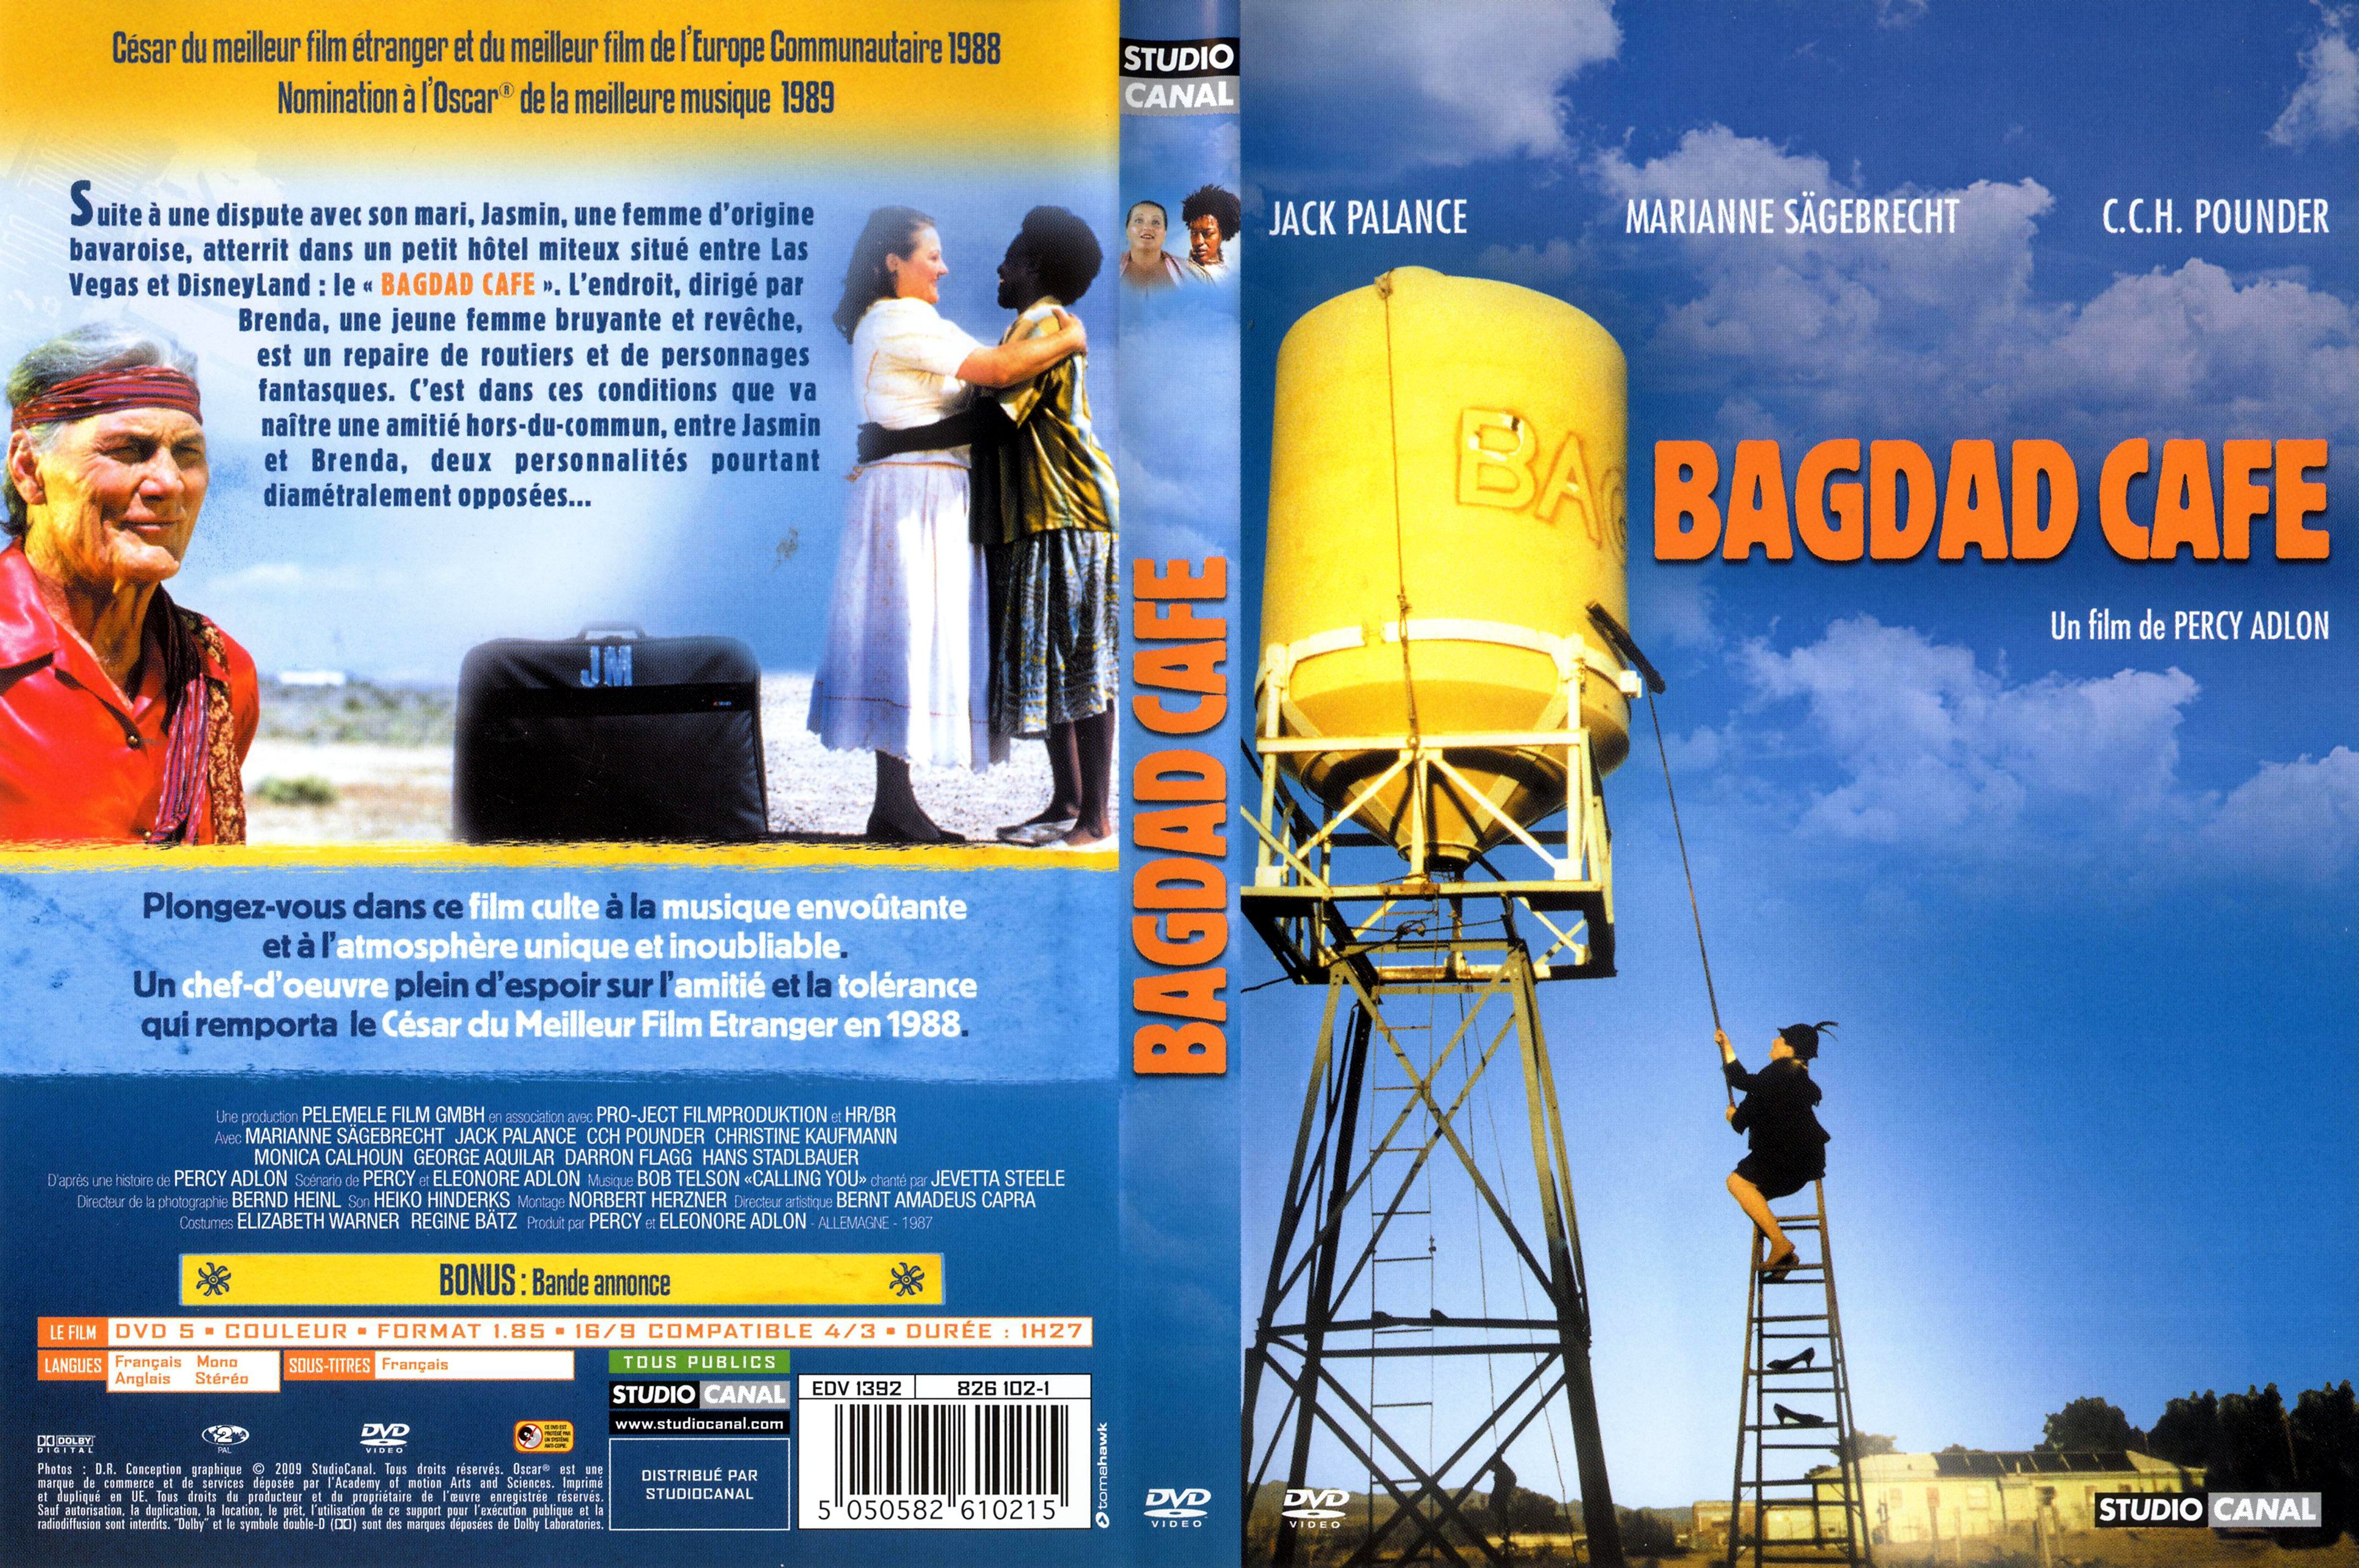 Jaquette DVD Bagdad caf v2